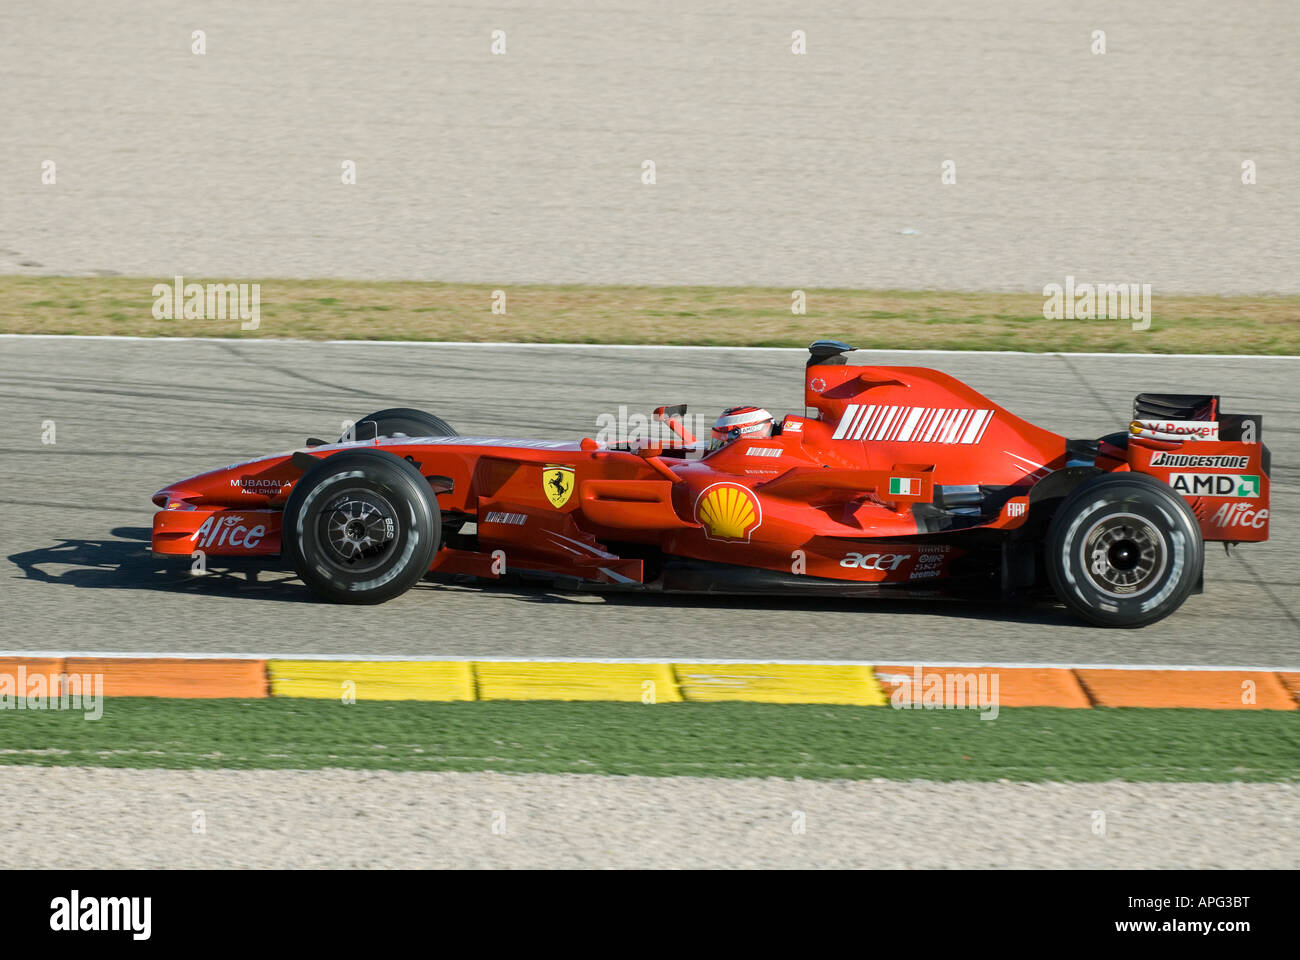 Kimi RAEIKKOENEN (FIN) en el Ferrari F2008 de carreras de Fórmula 1 Foto de stock